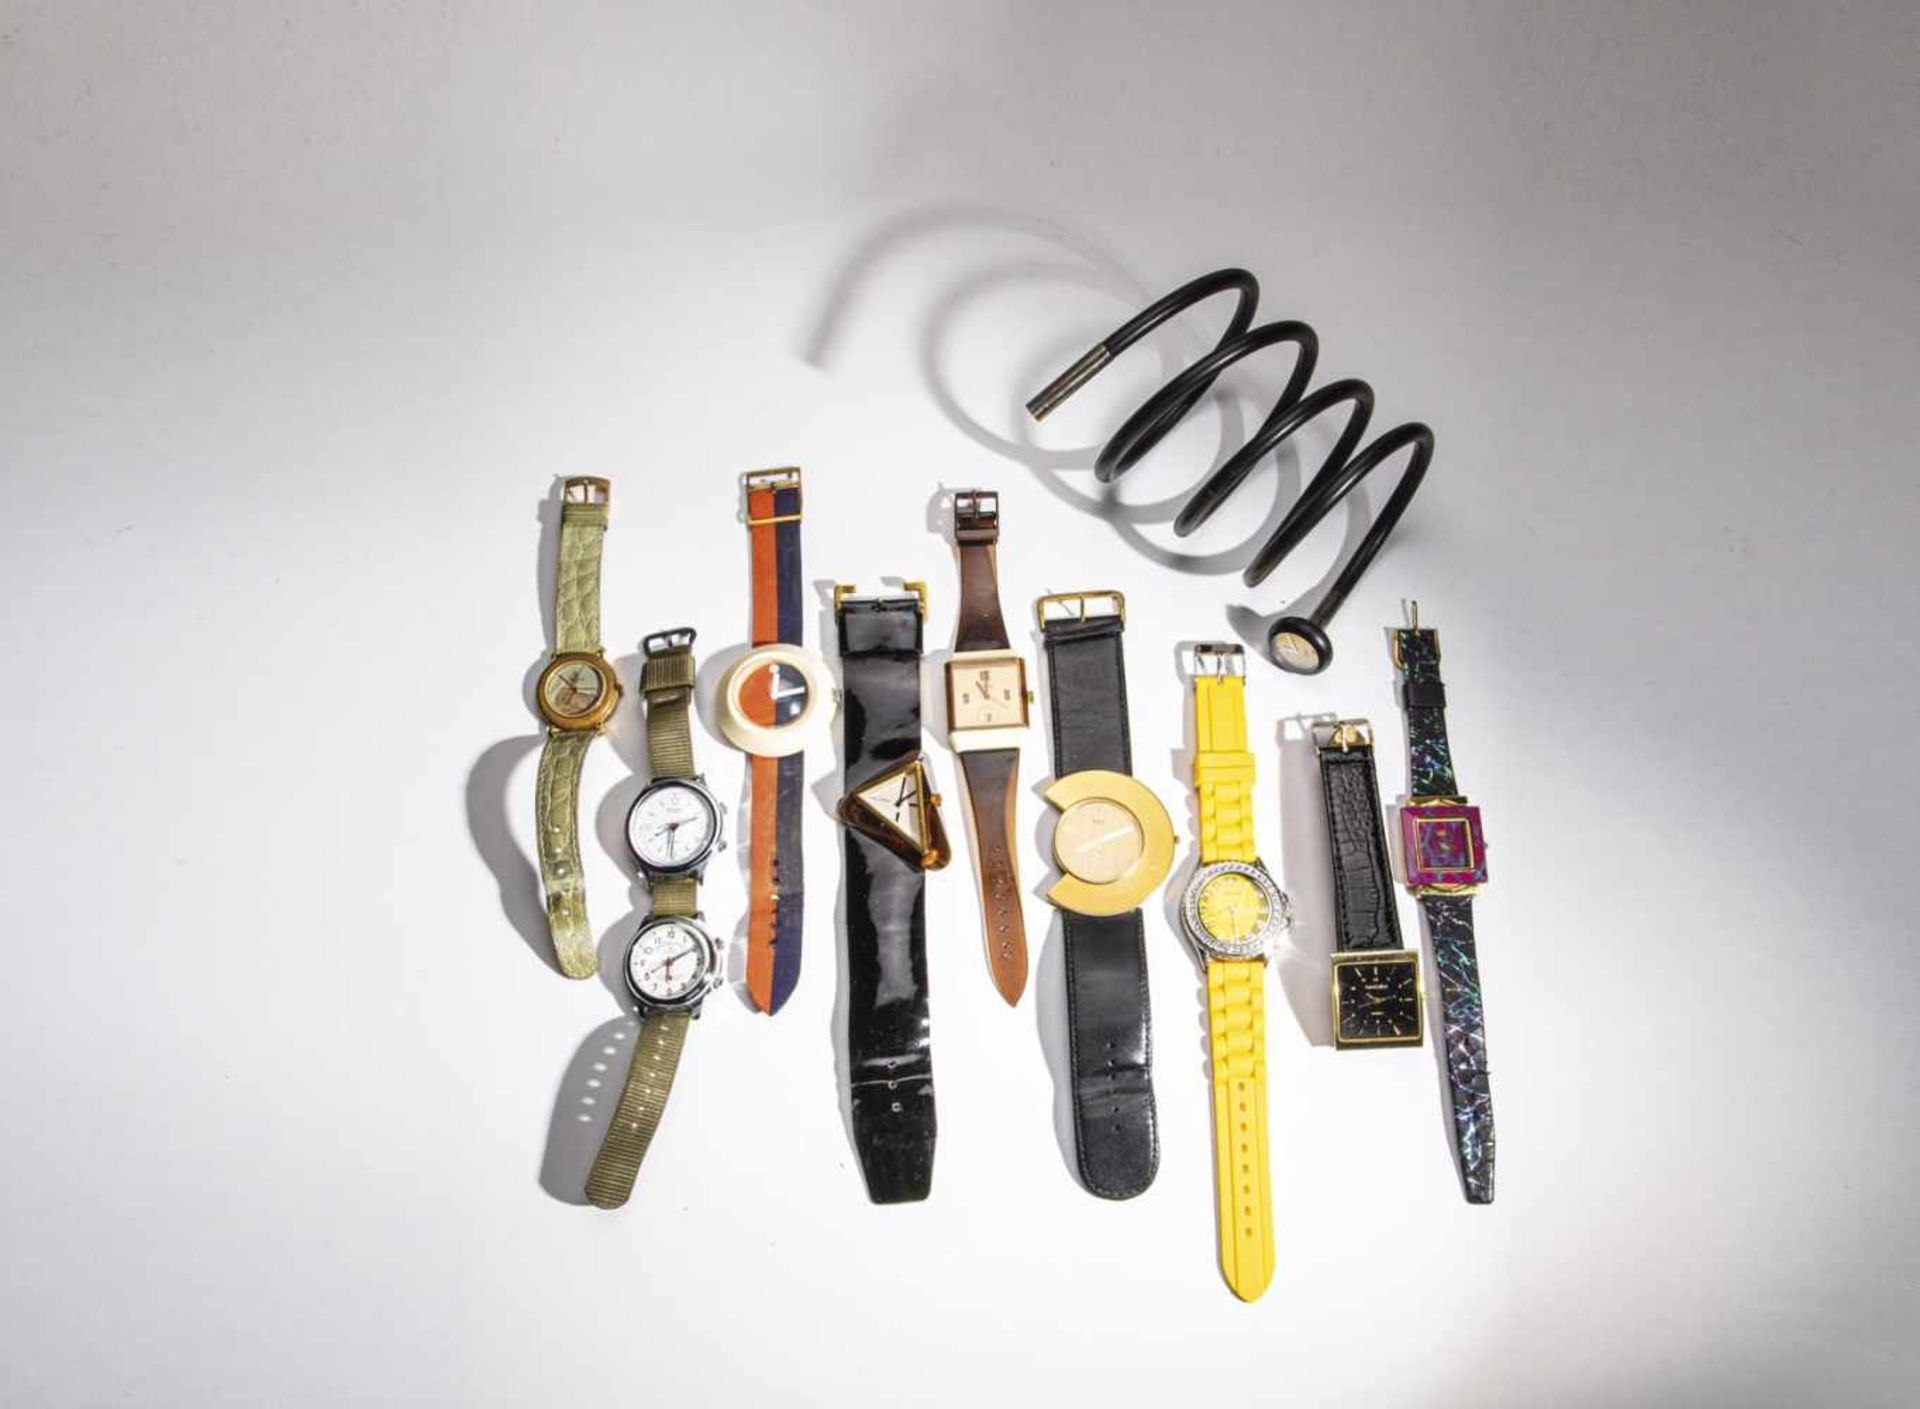 Armbanduhren-KonvolutUmfangreiches Konvolut bestehend aus zehn Armbanduhren in unterschiedlichem